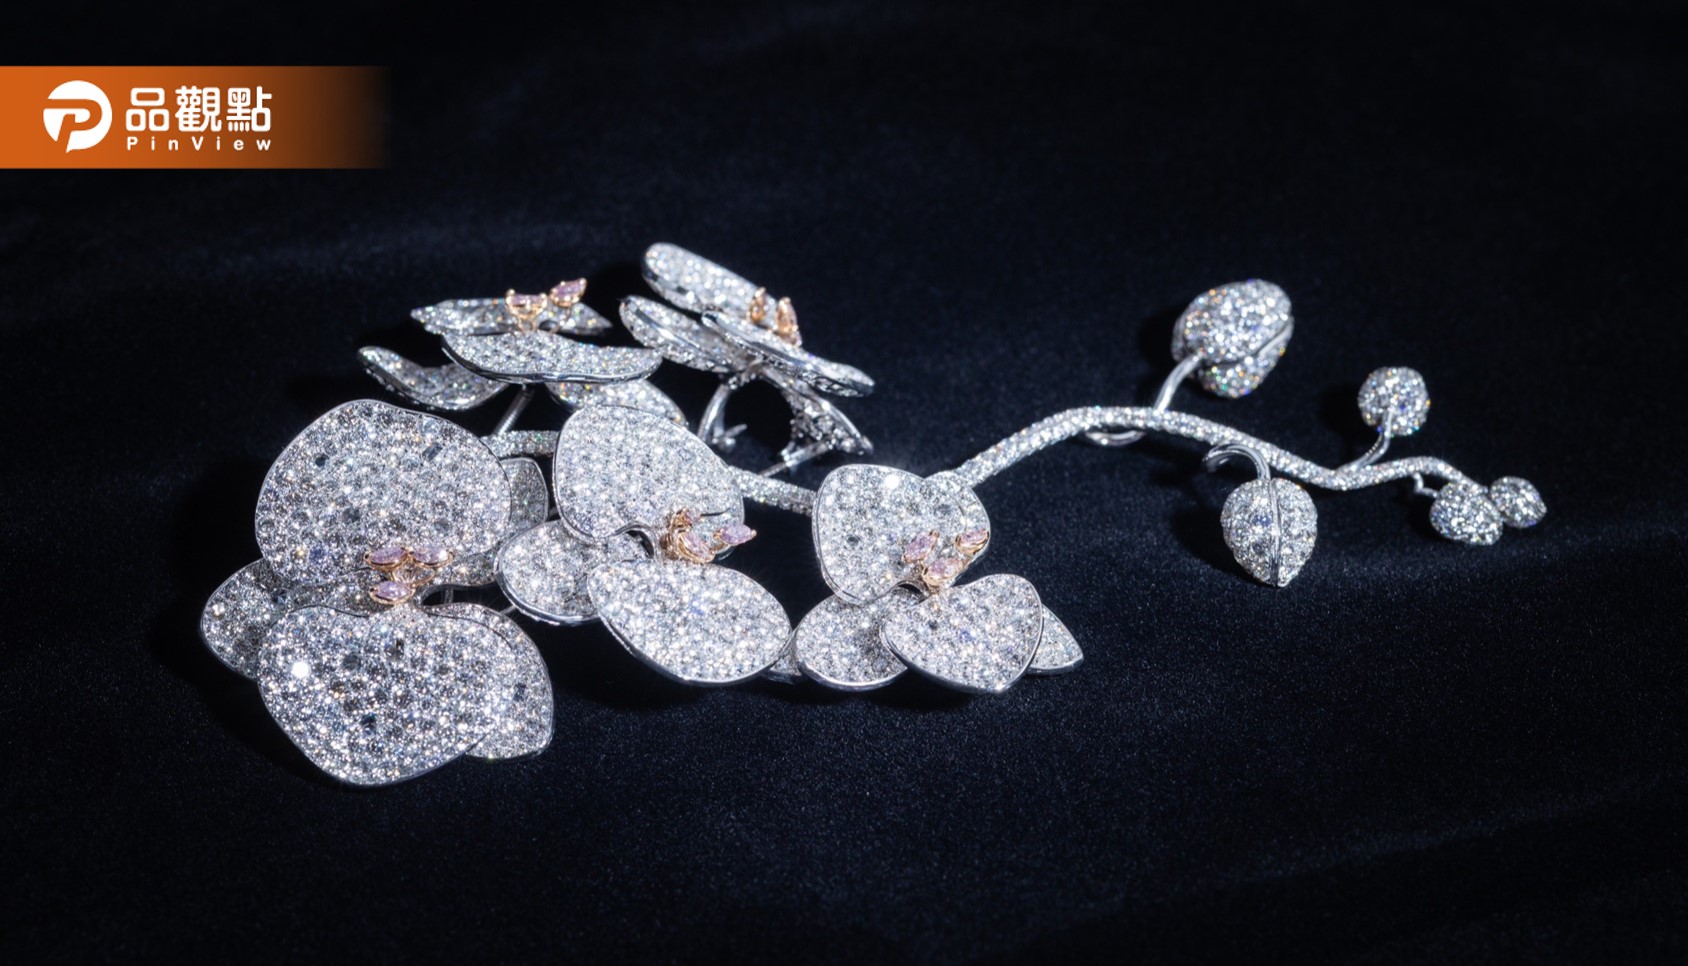 高雄在地知名珠寶設計師劉和宇 發表新作品「台灣蘭花」